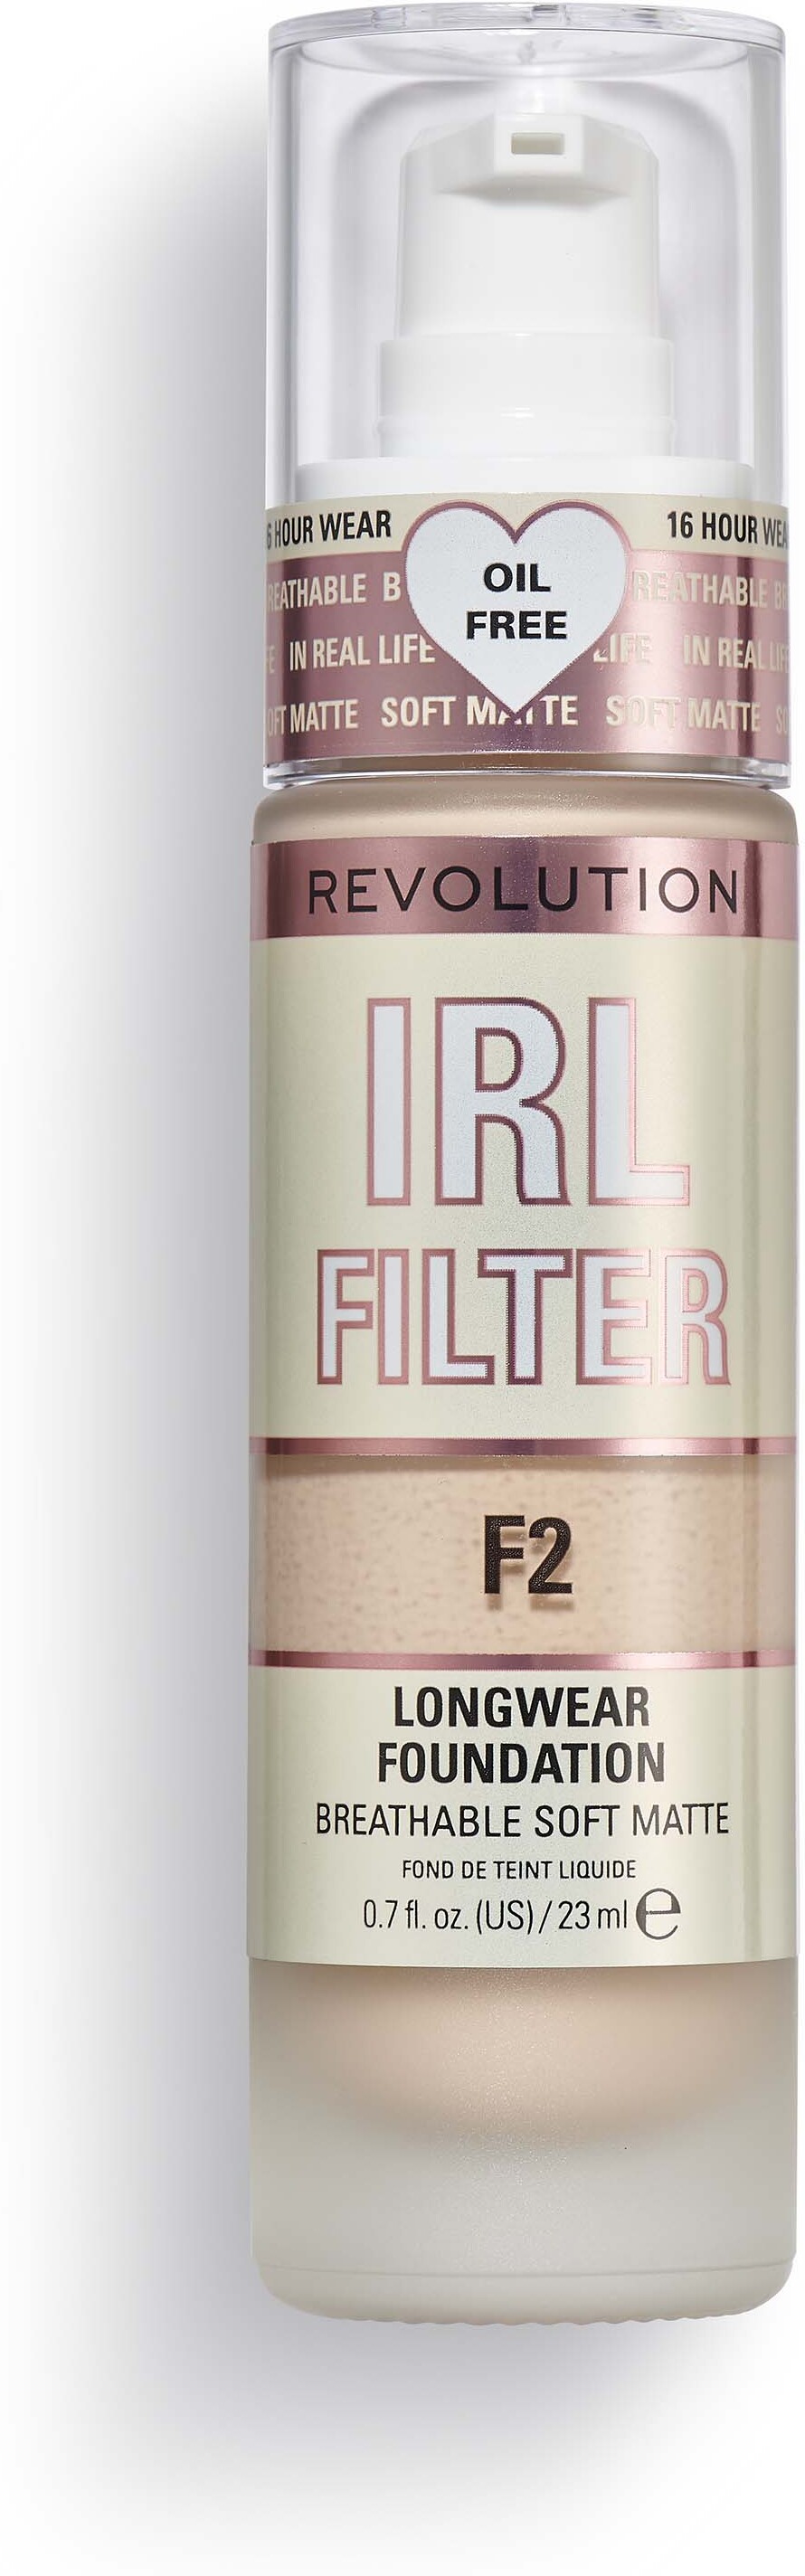 Makeup Revolution IRL Filter Longwear Foundation F2